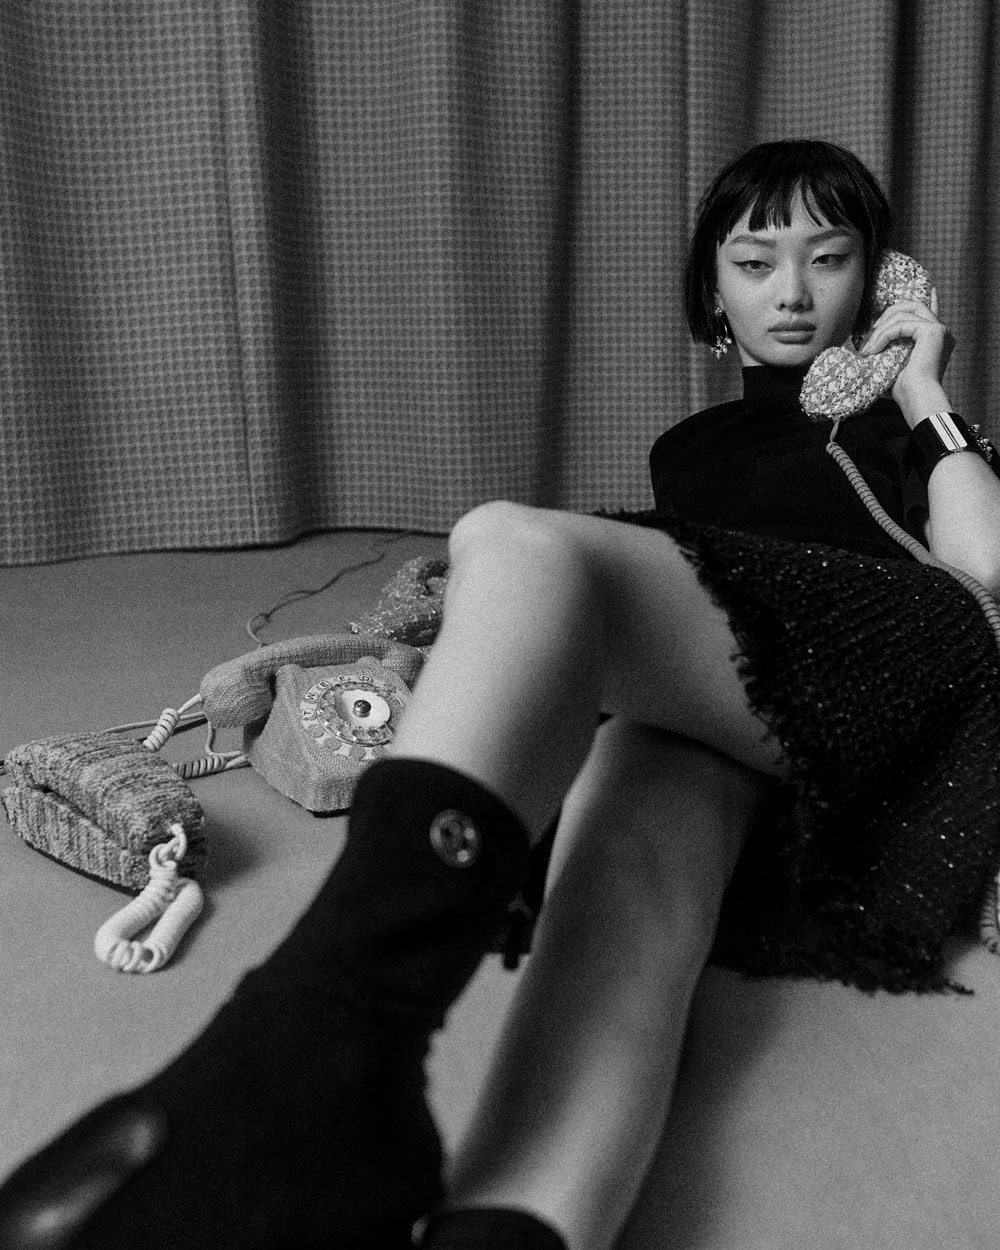 Dress your eyes in Tweed: Auf sonrisa gibt es eine Preview auf die limitierte Les 4 Ombres Tweed-Kollektion von Chanel.